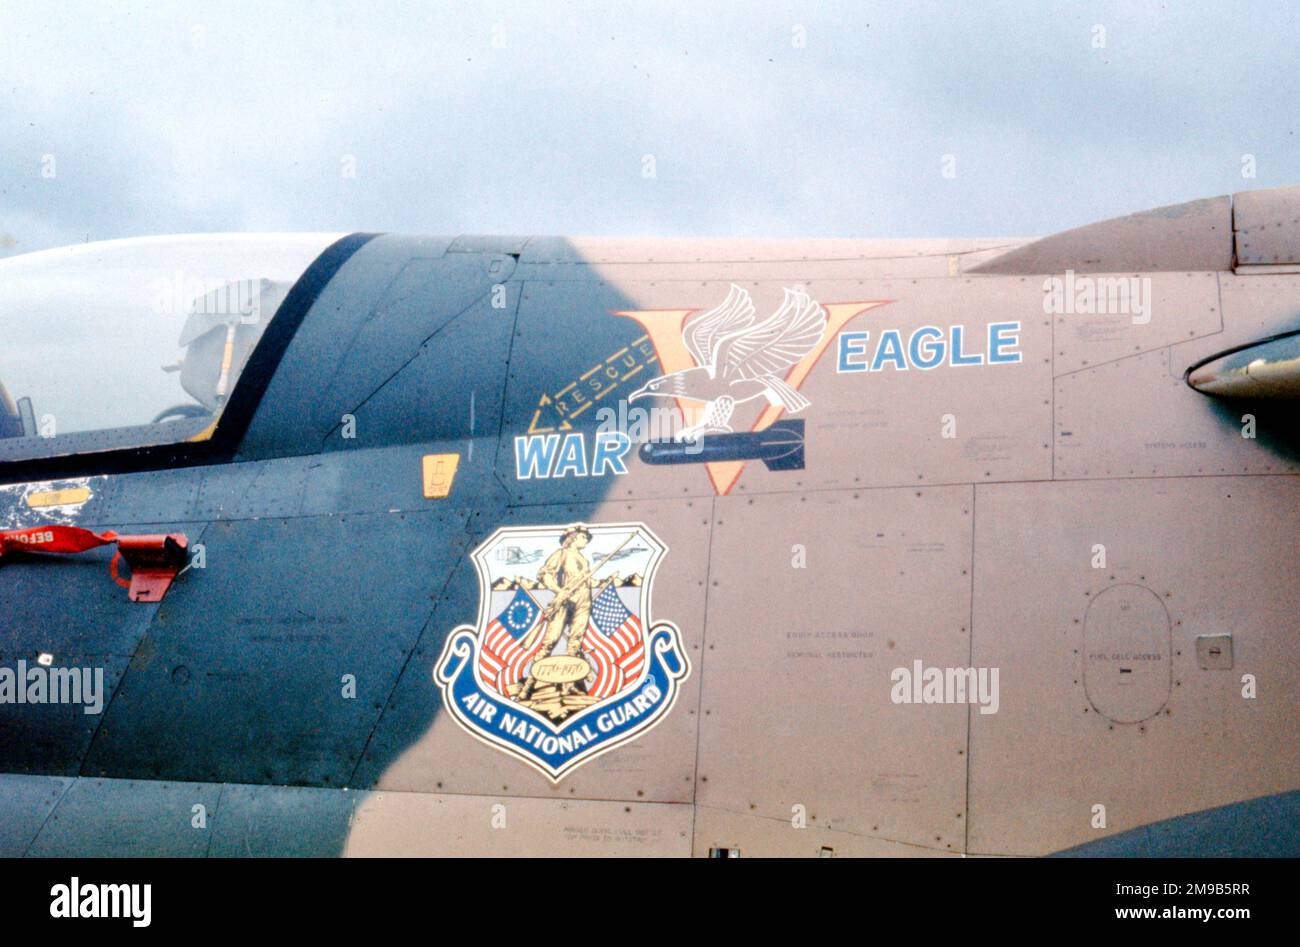 United States Air Force (USAF) - Ling-Temco-Vought A-7D Corsair II 73-1015 'War Eagle V' (msn D-411), della South Carolina Air National Guard durante un dispiegamento 'Coronet solo' alla RAF Wittering nel luglio 1978. (ero lì!) Foto Stock